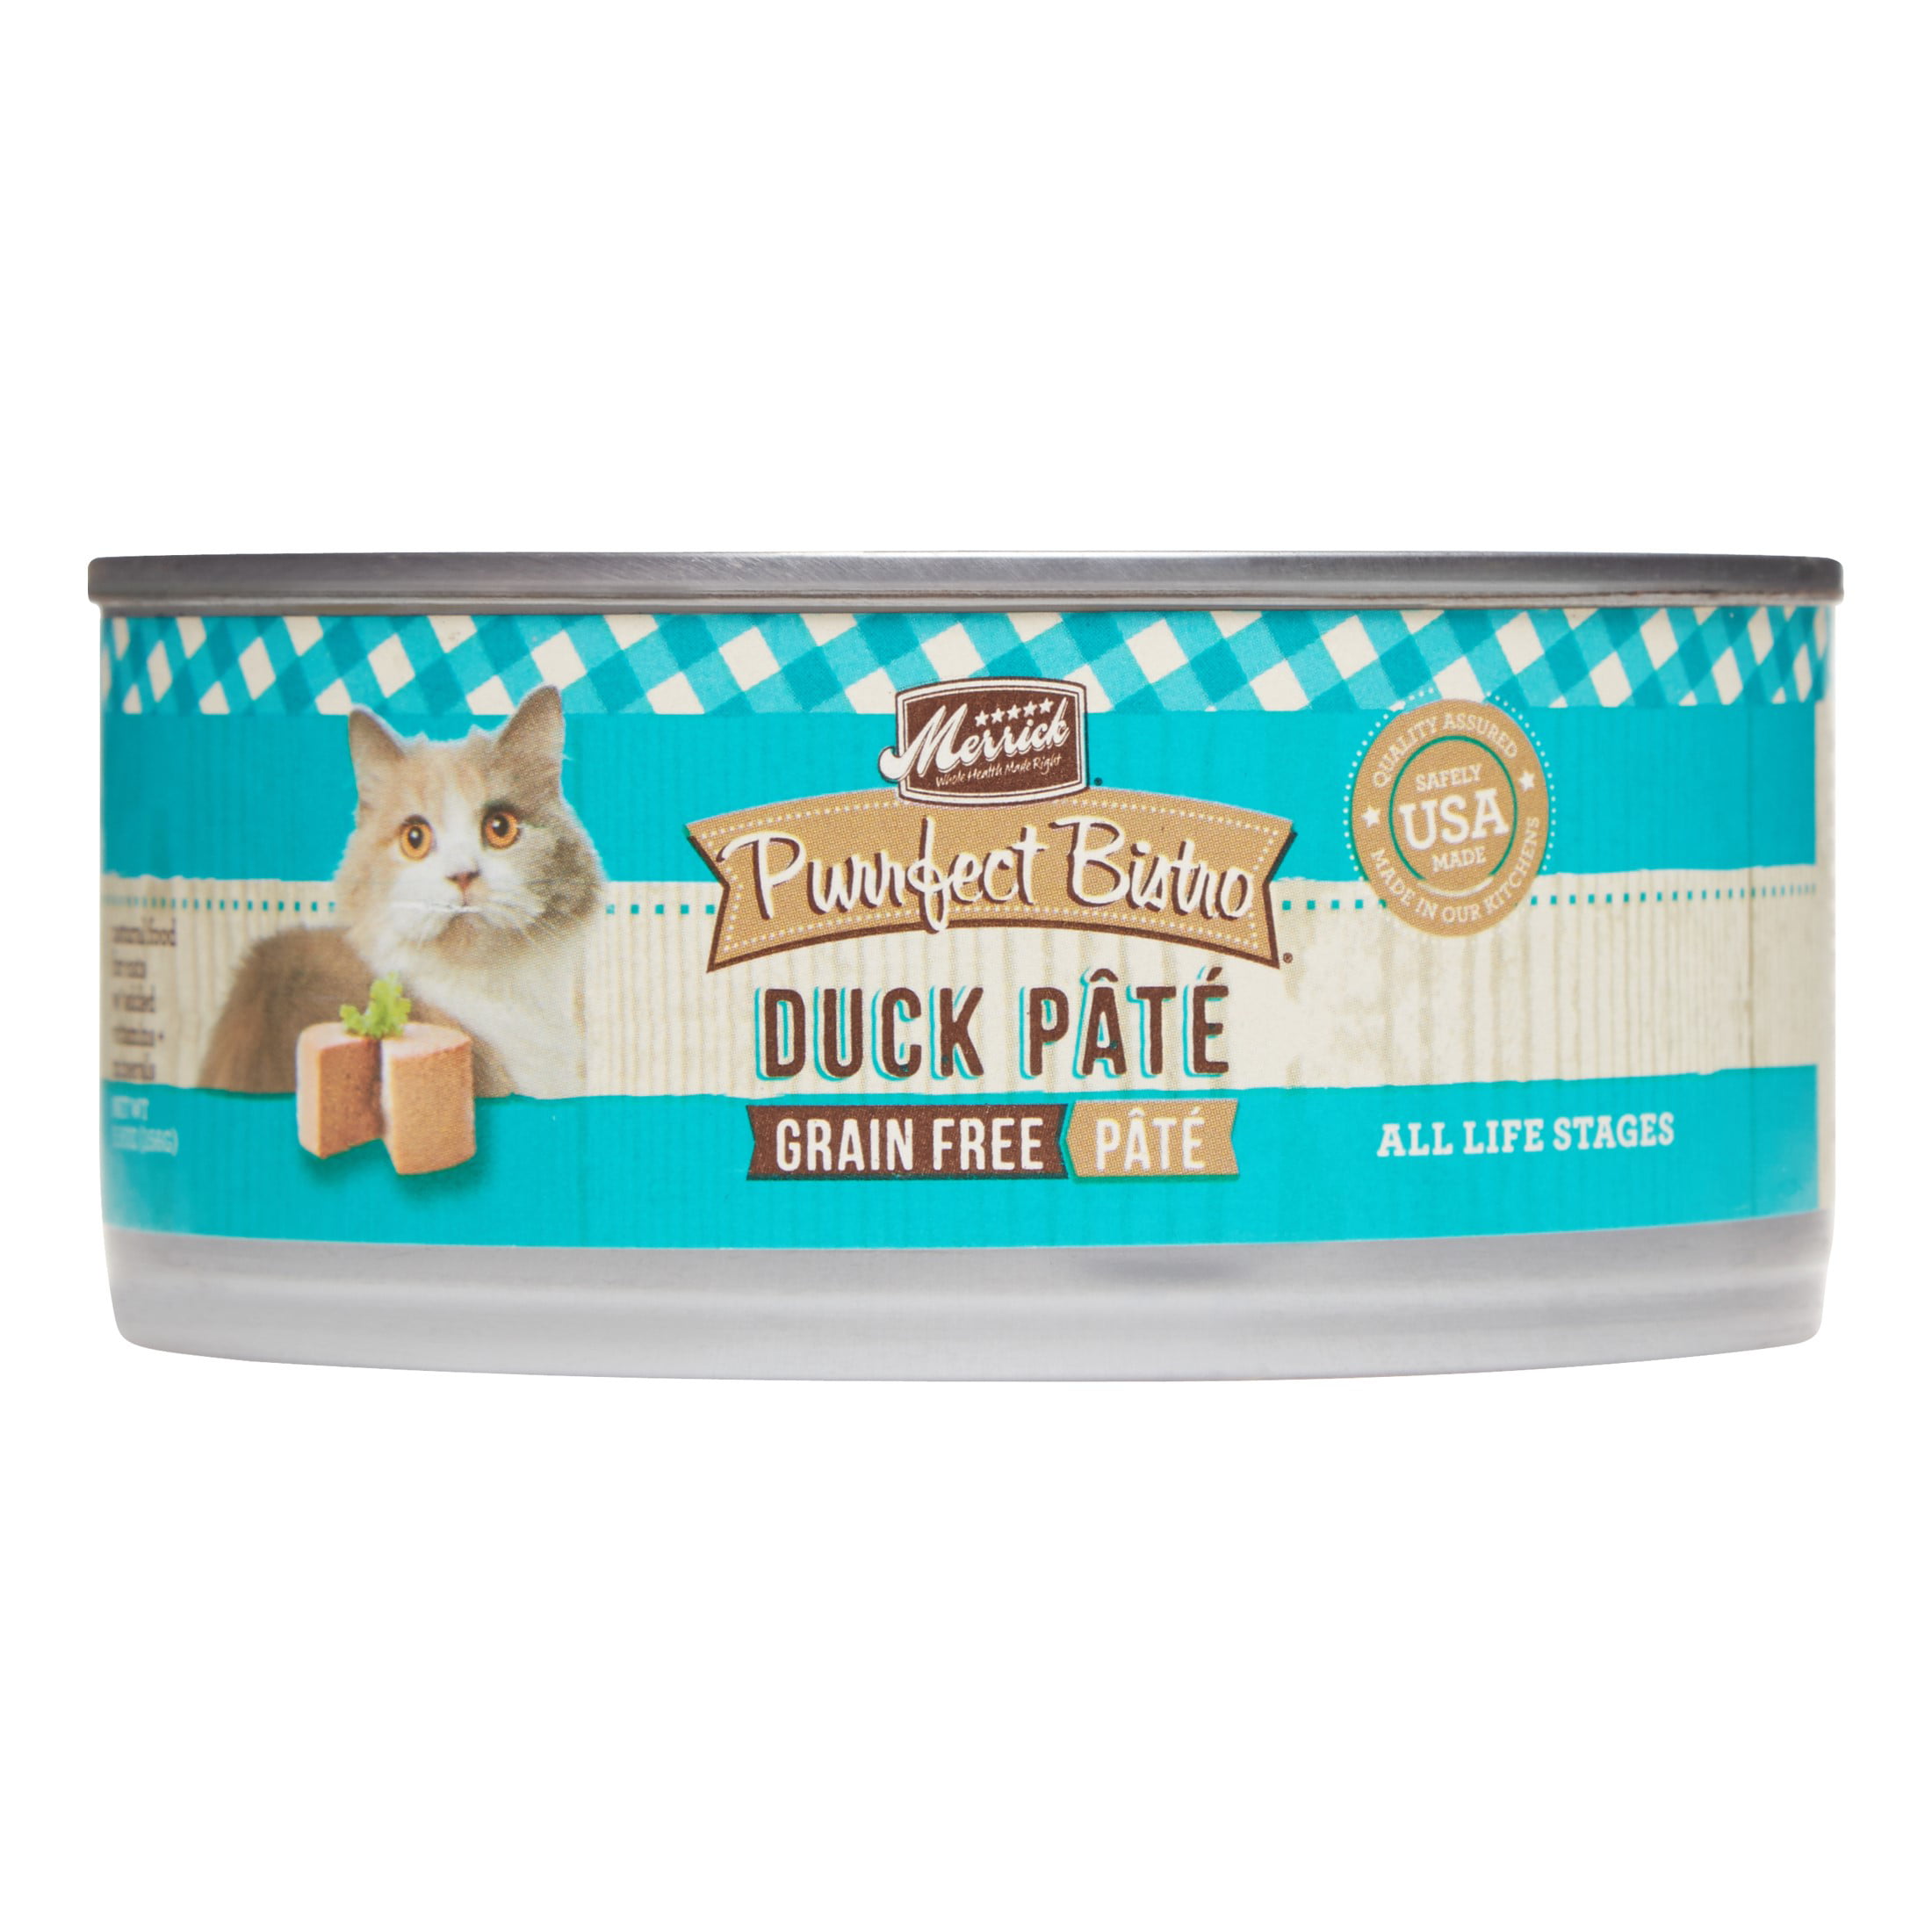 Merrick Purrfect Bistro GrainFree Duck Pate Wet Cat Food, 5.5 oz